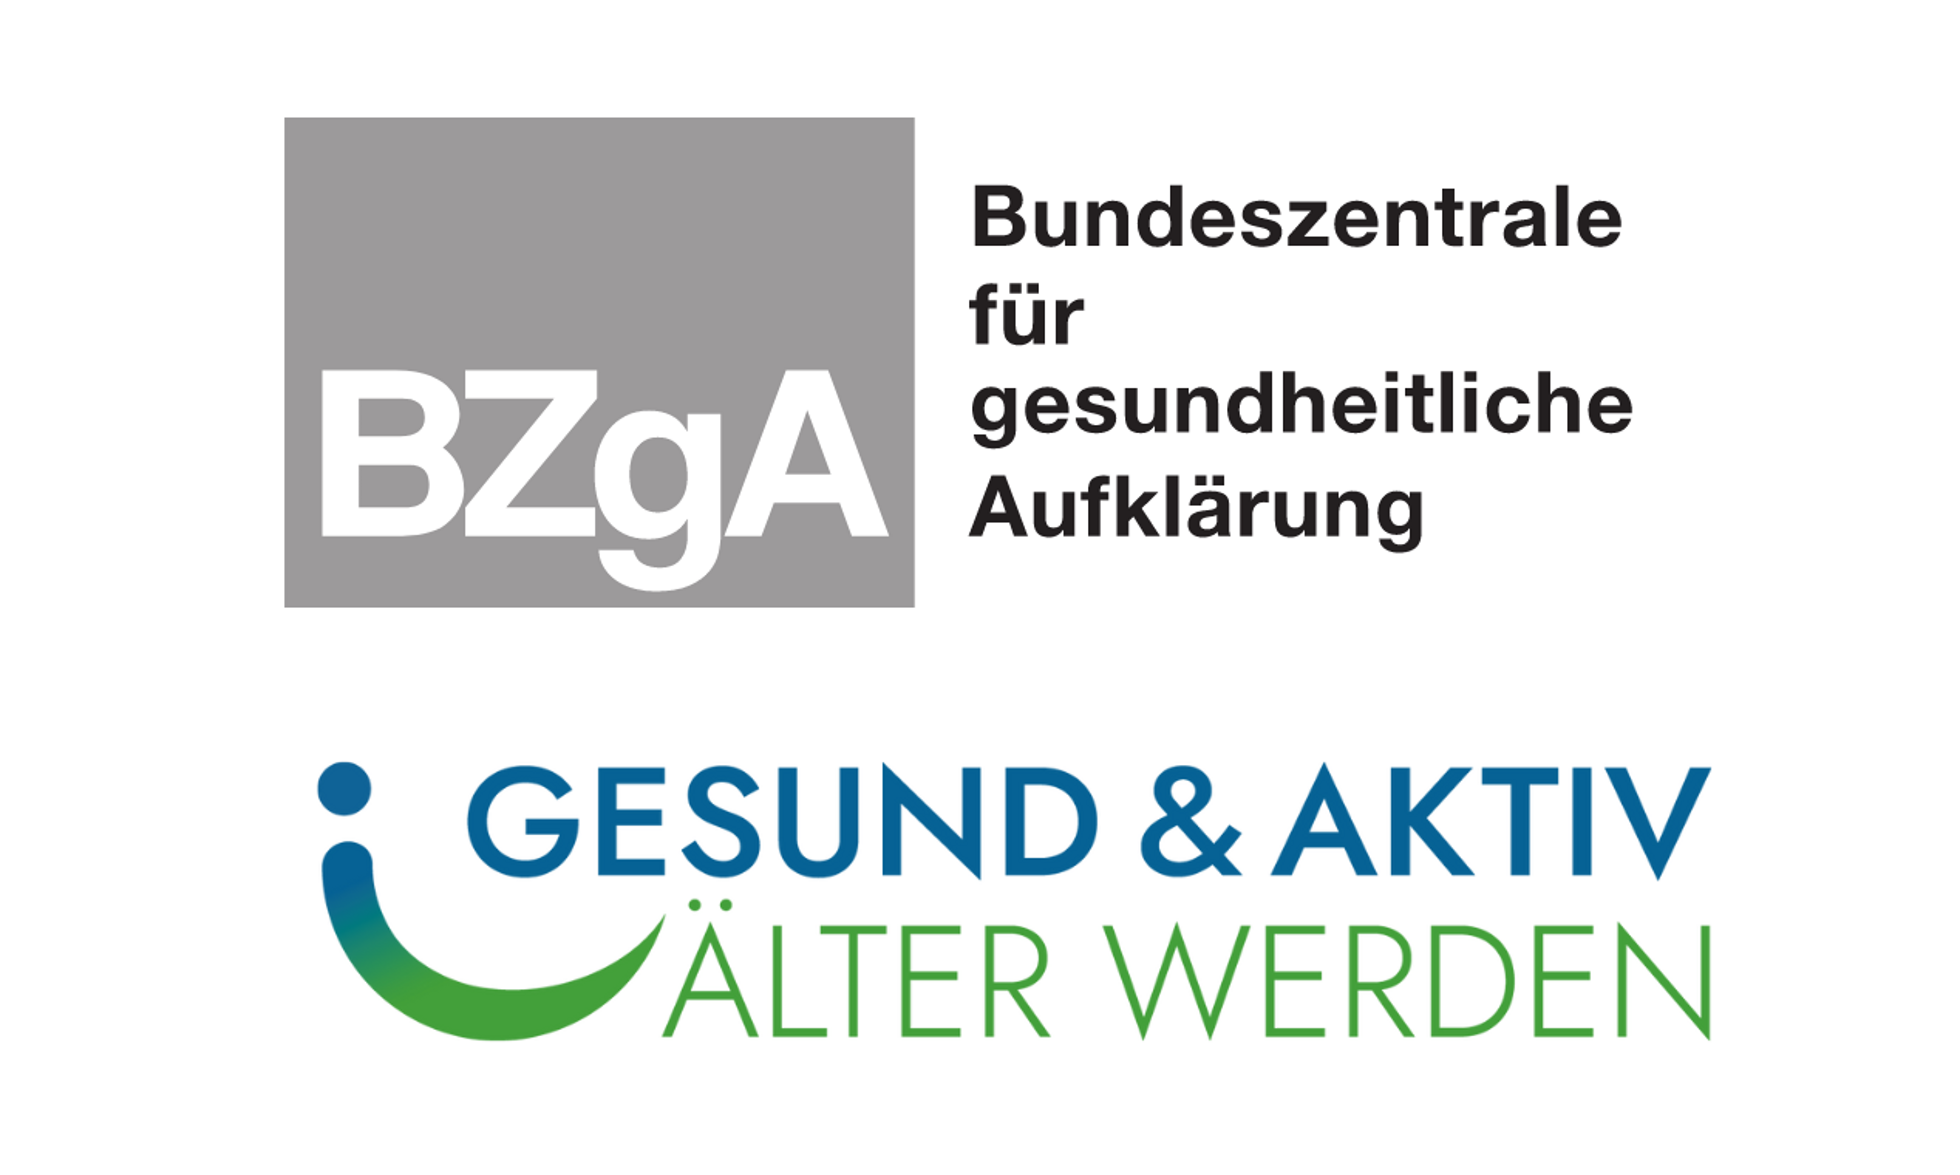 Logos BZgA - Bundeszentrale für gesundheitliche Aufklärung und Gesund & aktiv älter werden